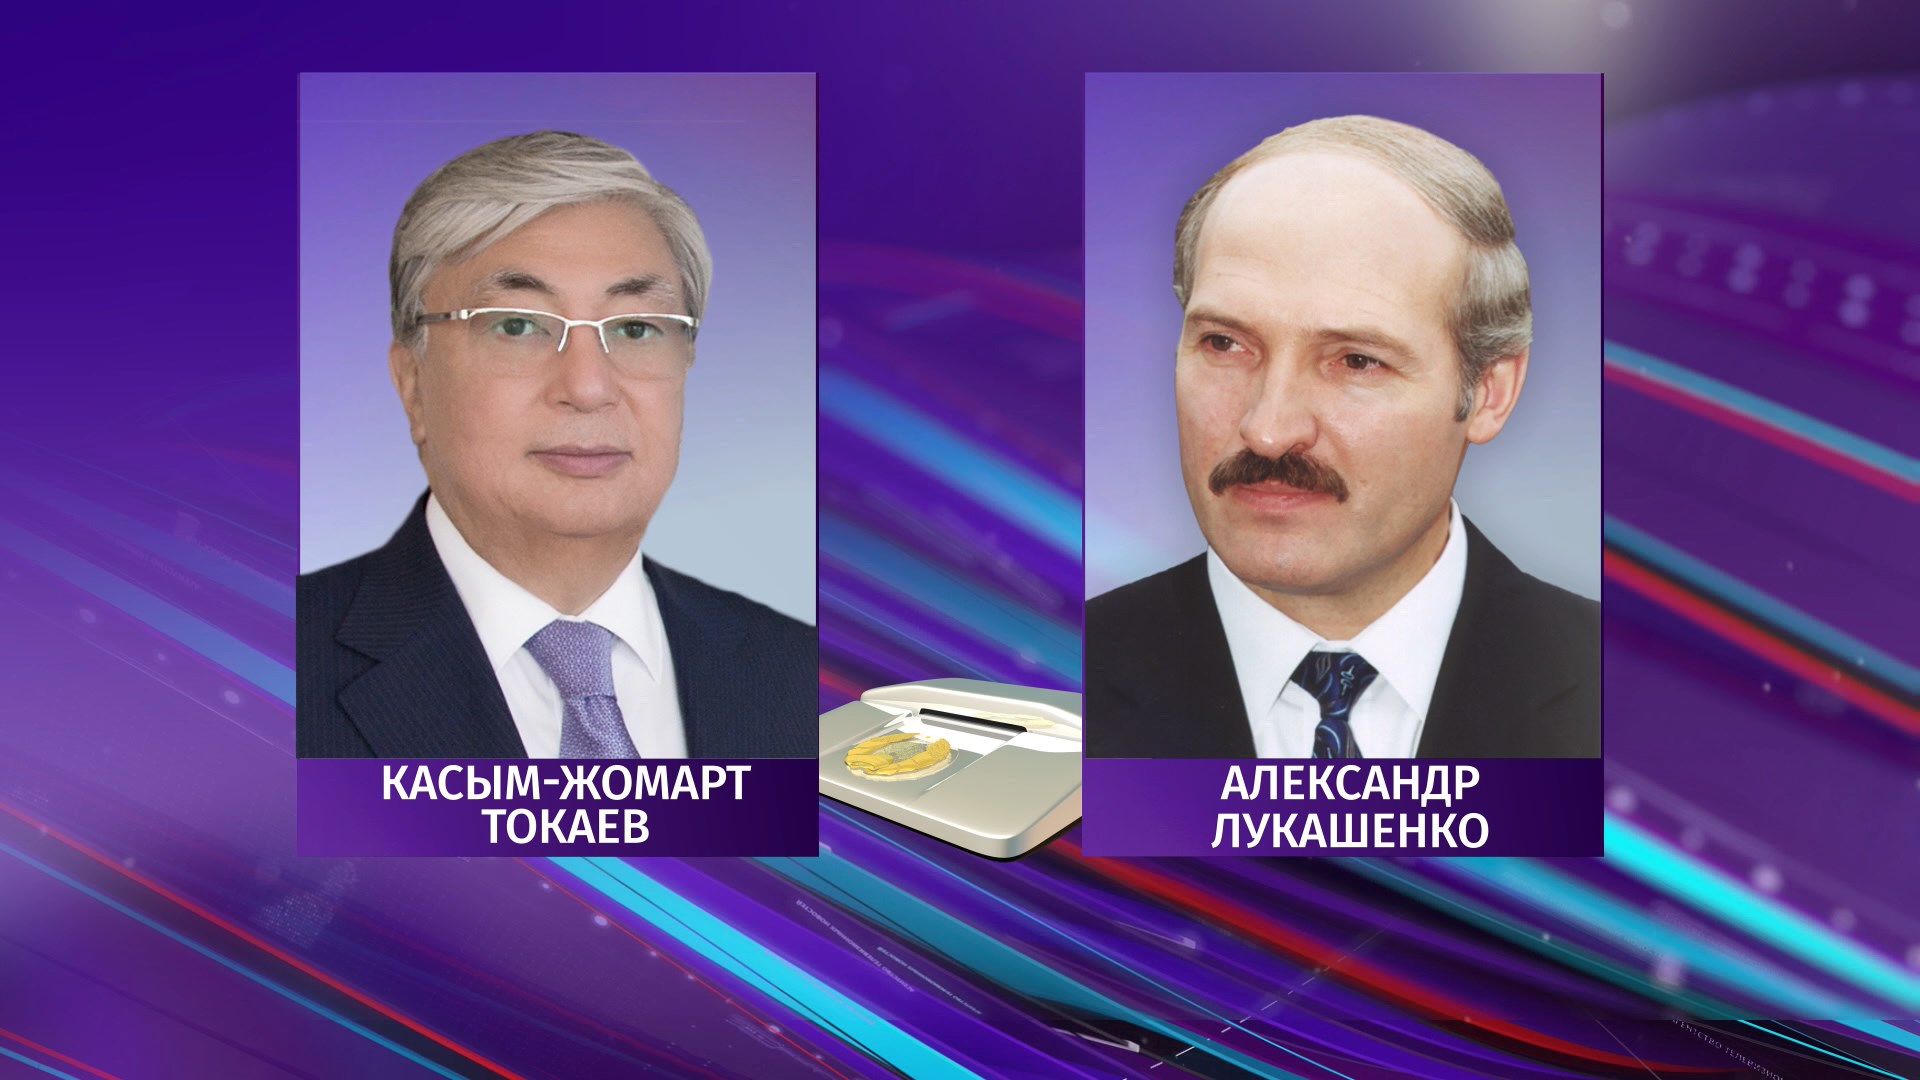 Александр Лукашенко и Касым-Жомарт Токаев провели телефонный разговор